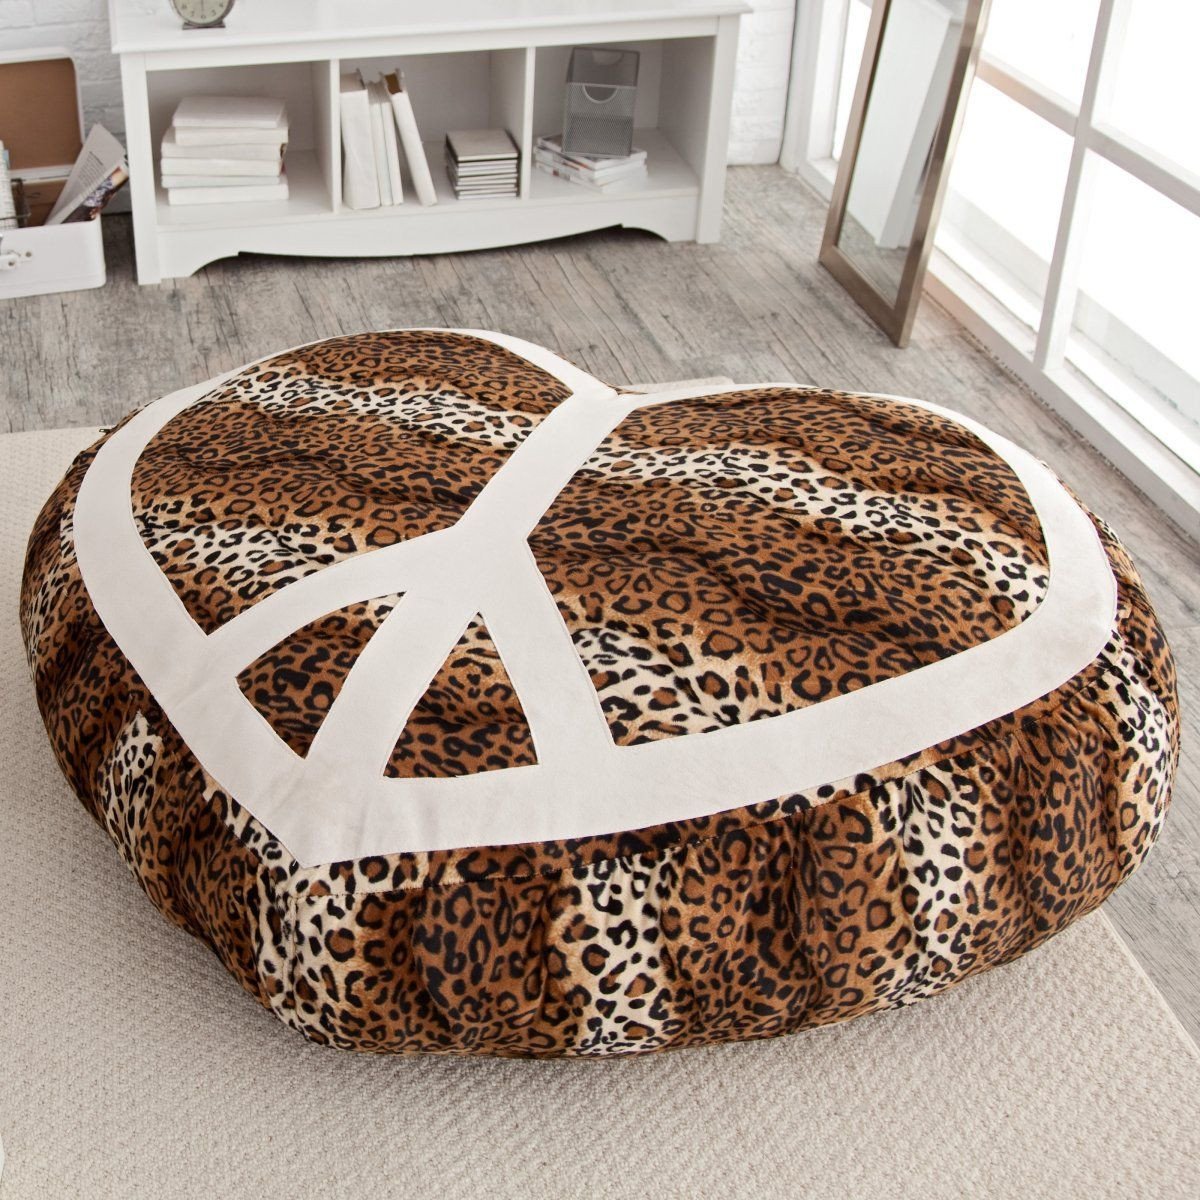 Tween Chair for Bedroom Best Of Perfect for Our Tween S Room Elite Xl Woodstock Peace Heart